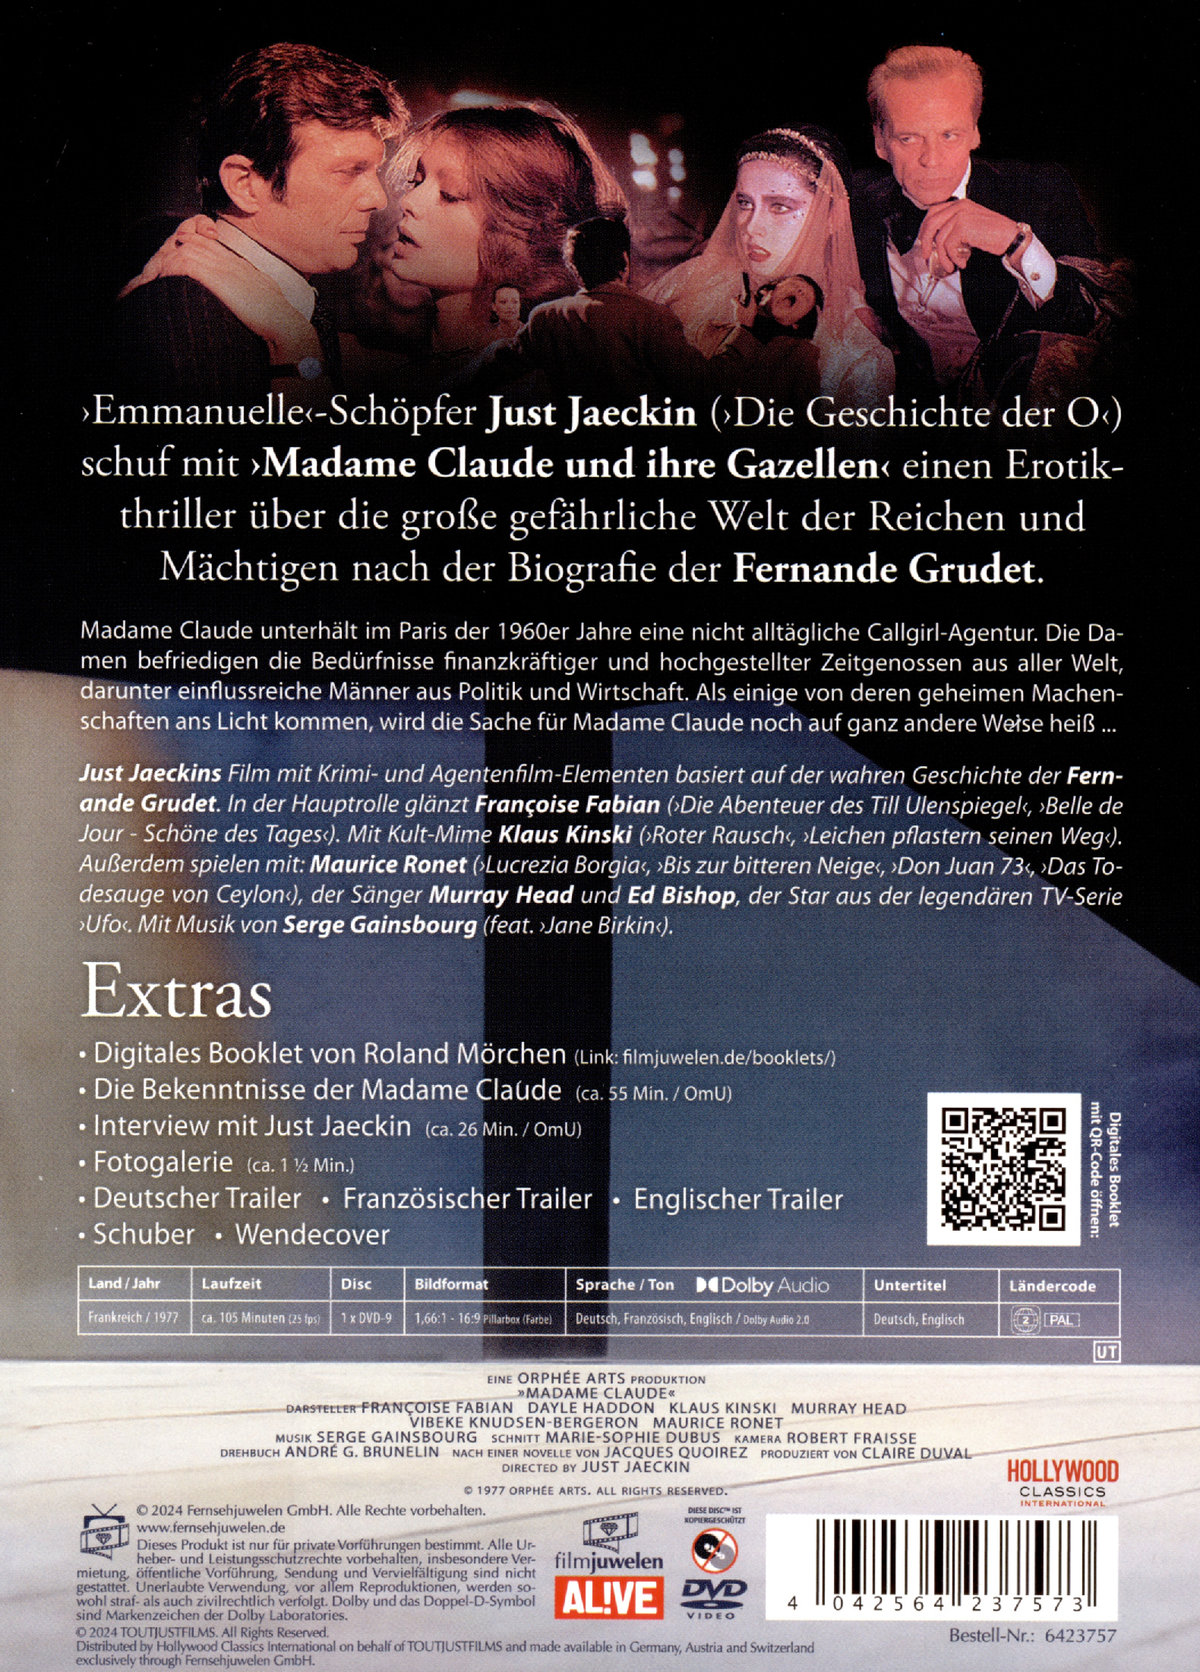 Madame Claude und ihre Gazellen (Filmjuwelen)  (DVD)